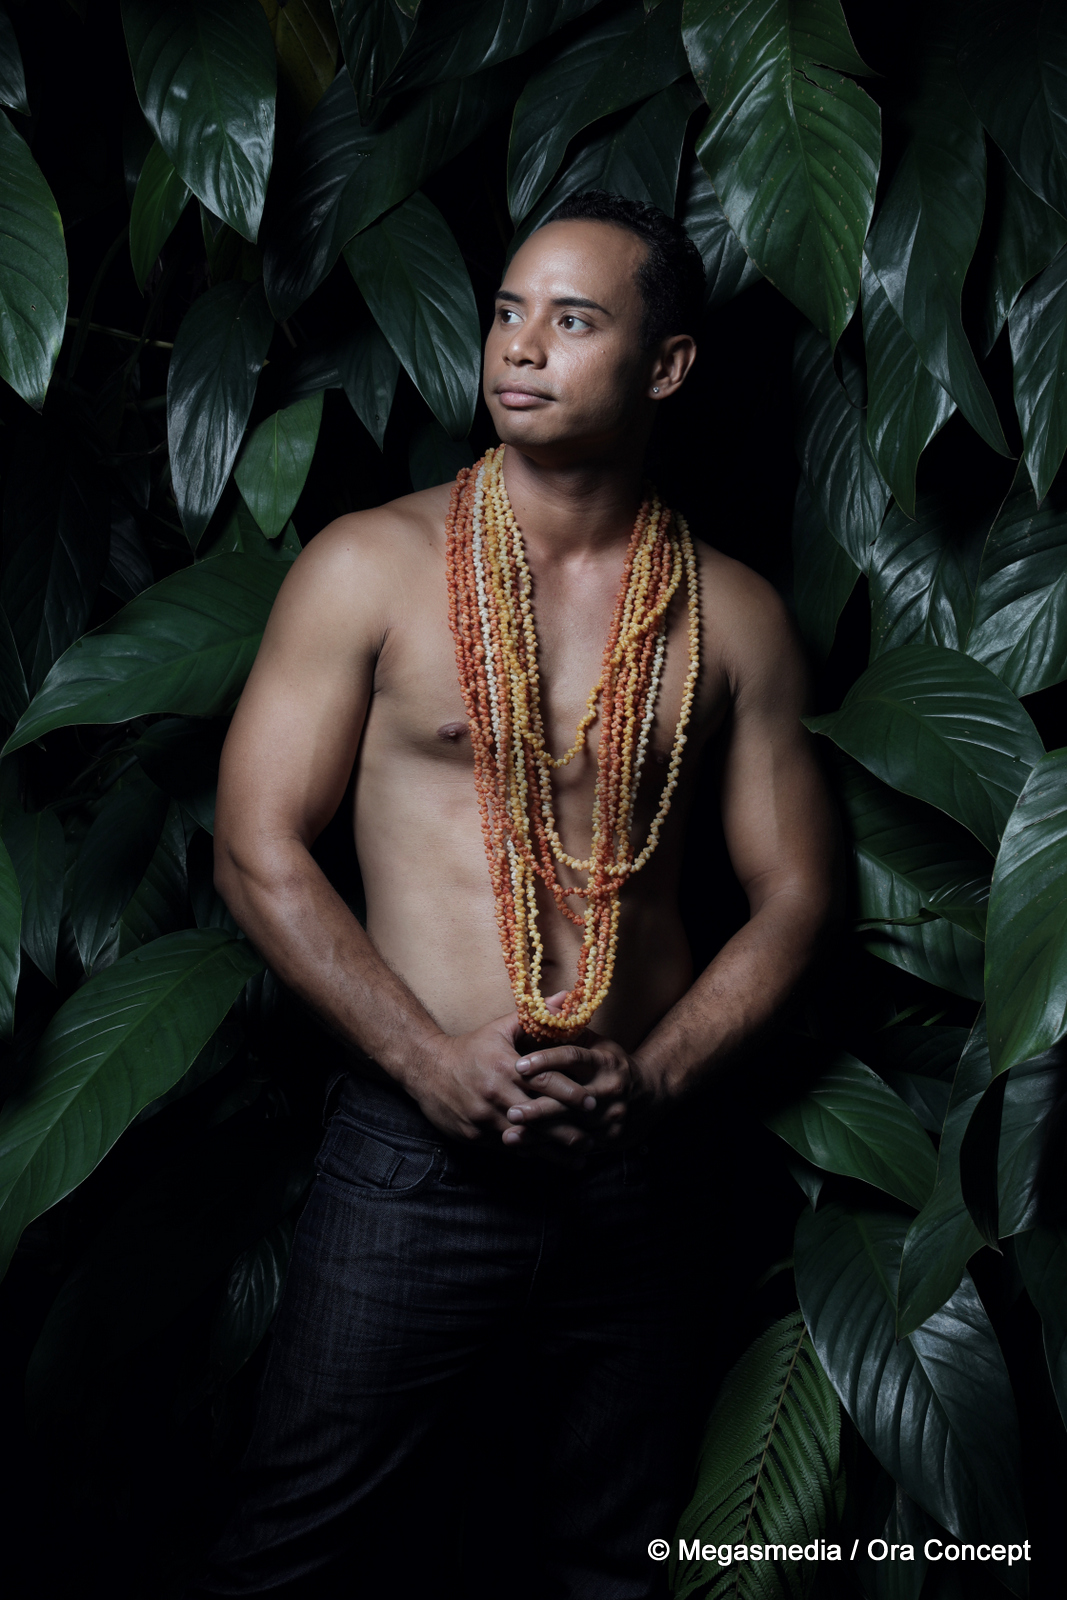 L'un de ces douze apollons sera élu Mister Tahiti 2017 ce soir